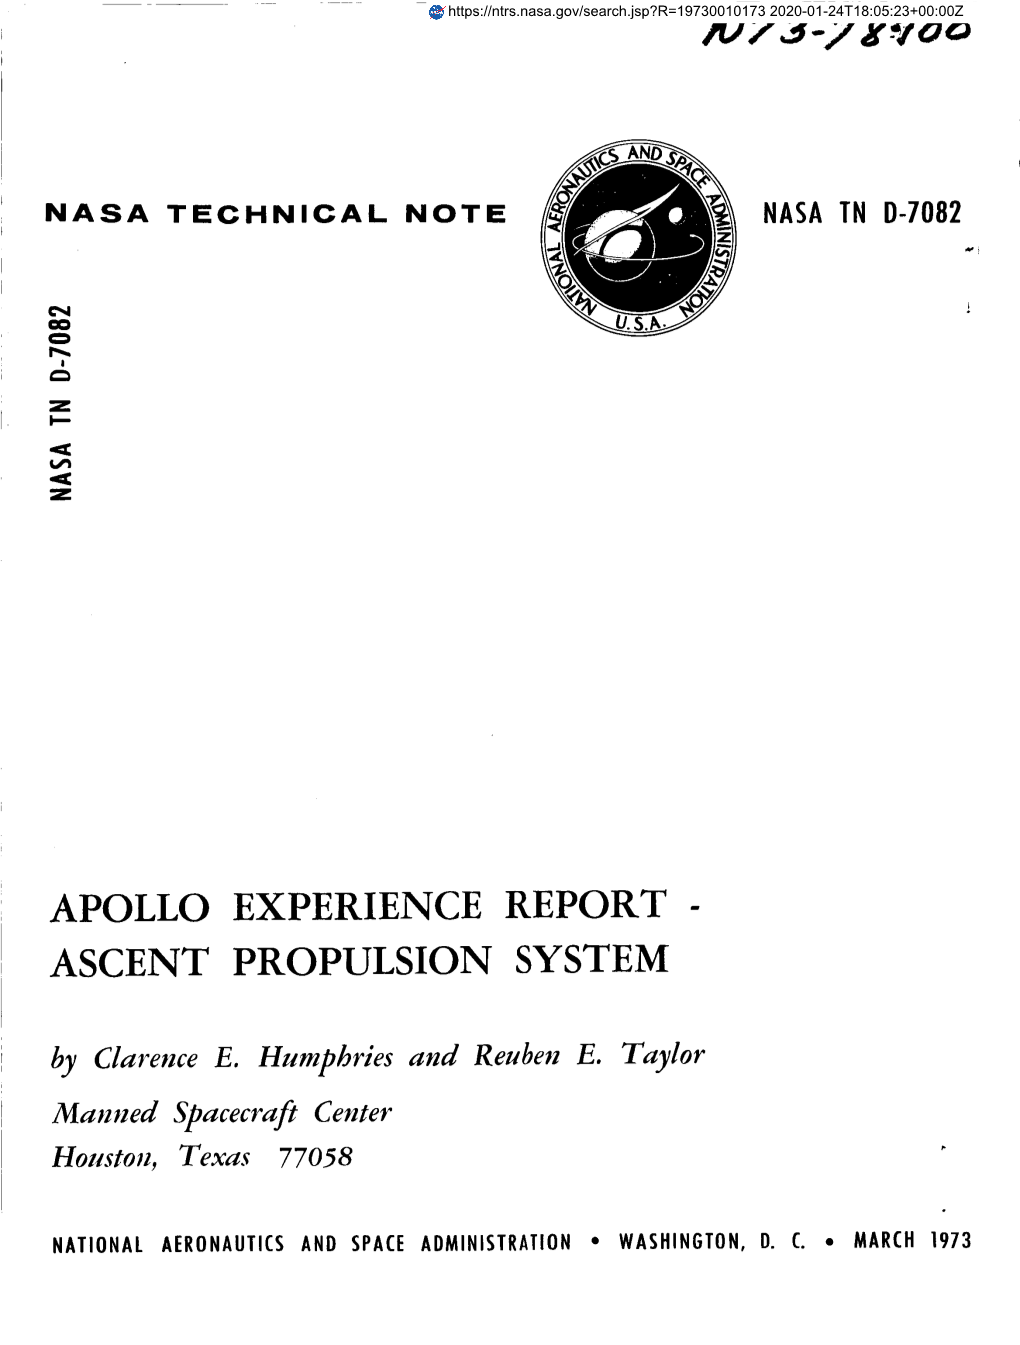 Apollo Experience Report